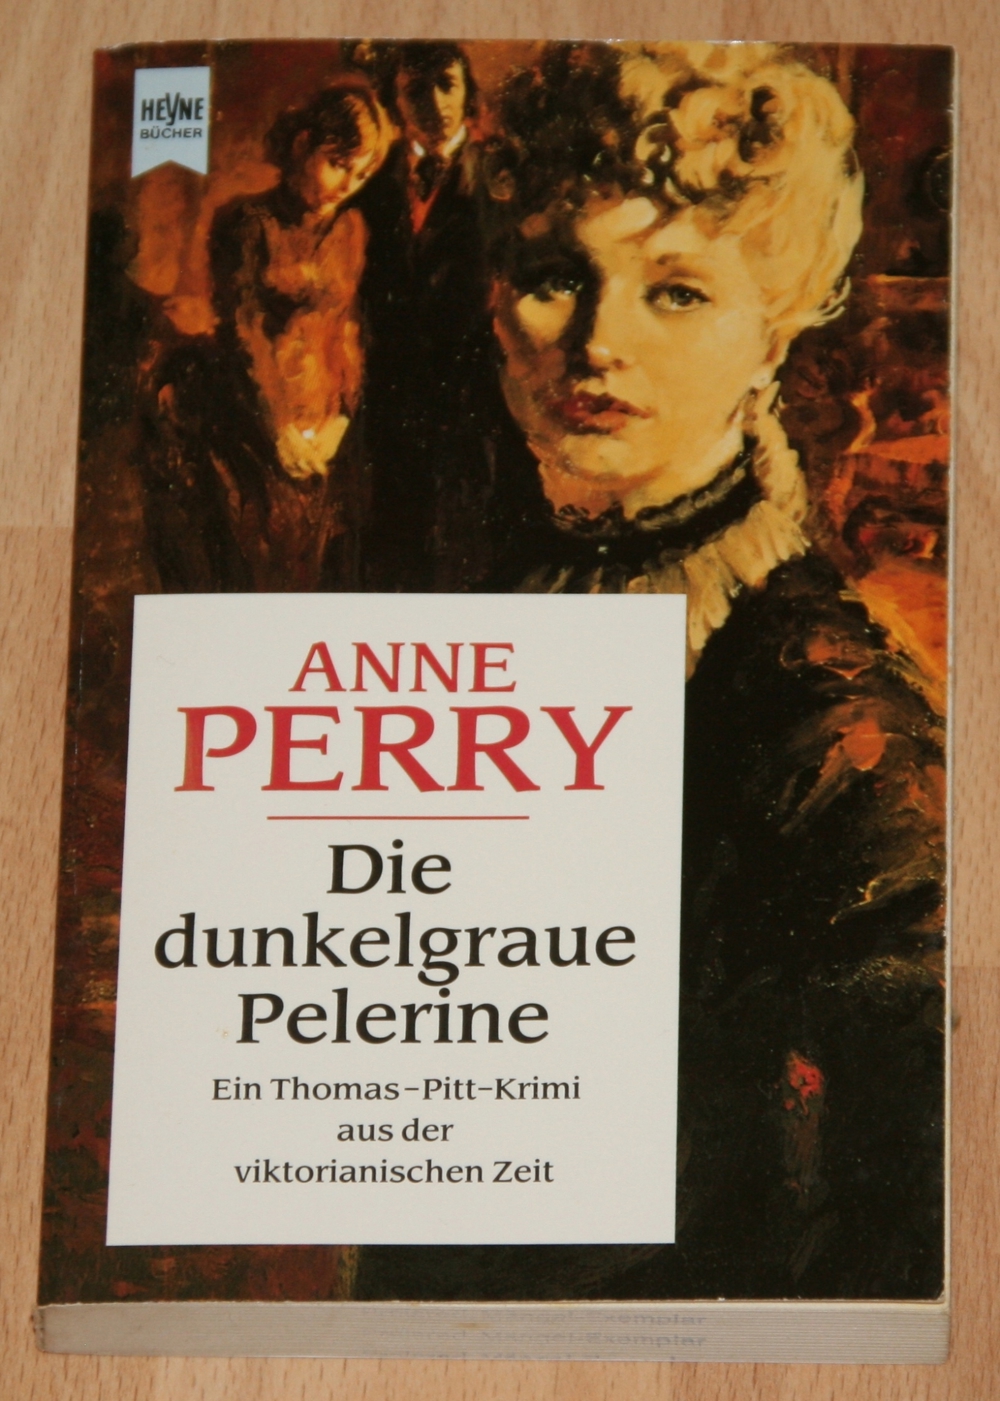 Buch "Die dunkelgraue Pelerine" von Anne Perry - Krimi - TOP !!